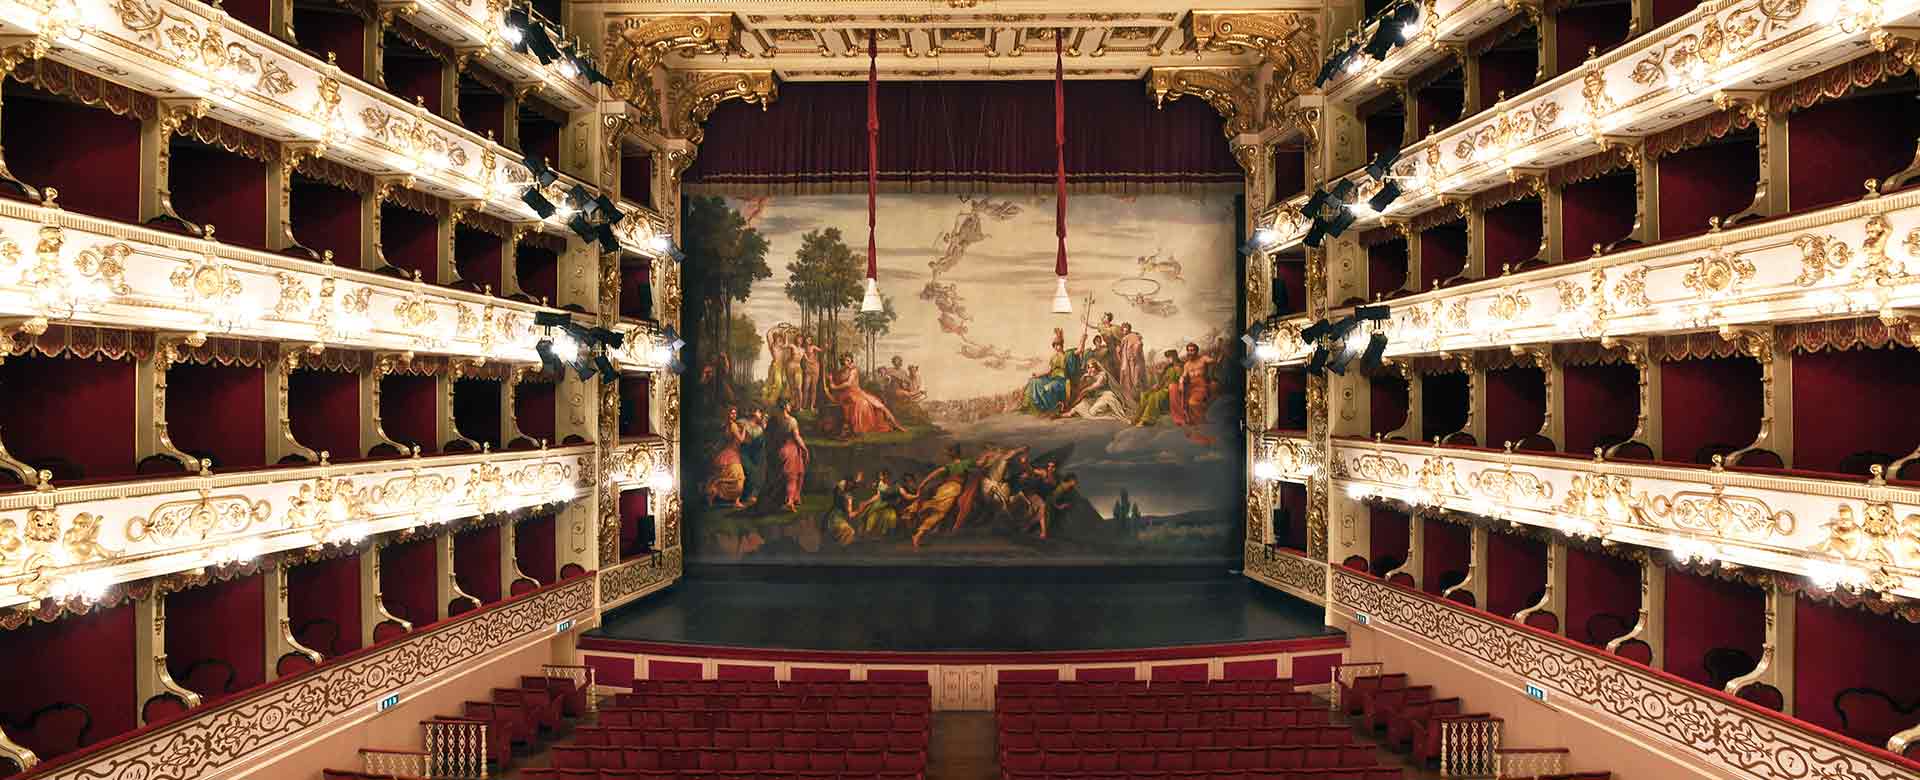 Immagine del Teatro Regio di Parma